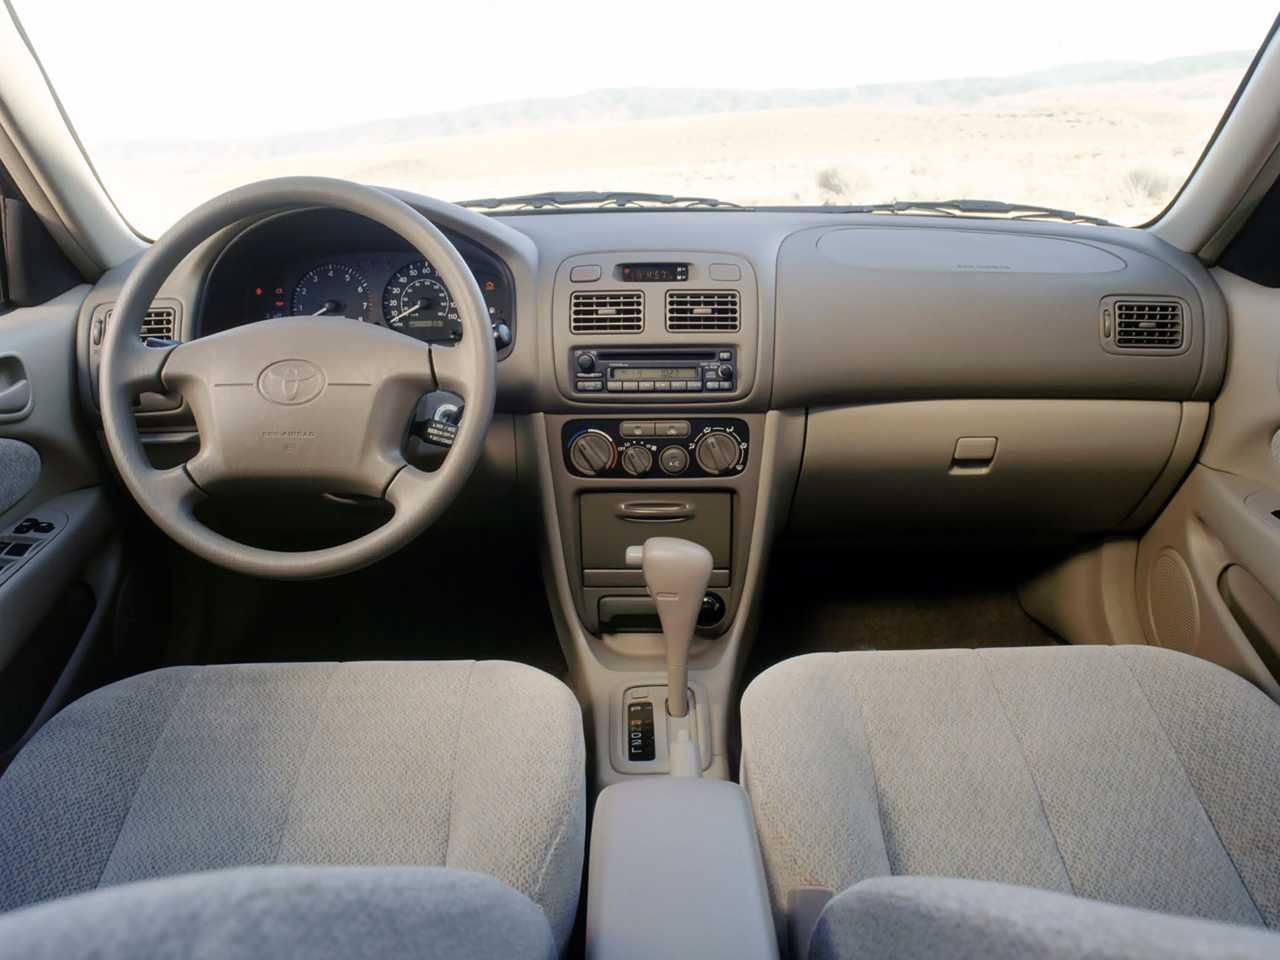 Тойота королла 2006 года: технические характеристики с двигателем 1.4 и 1.6, фото